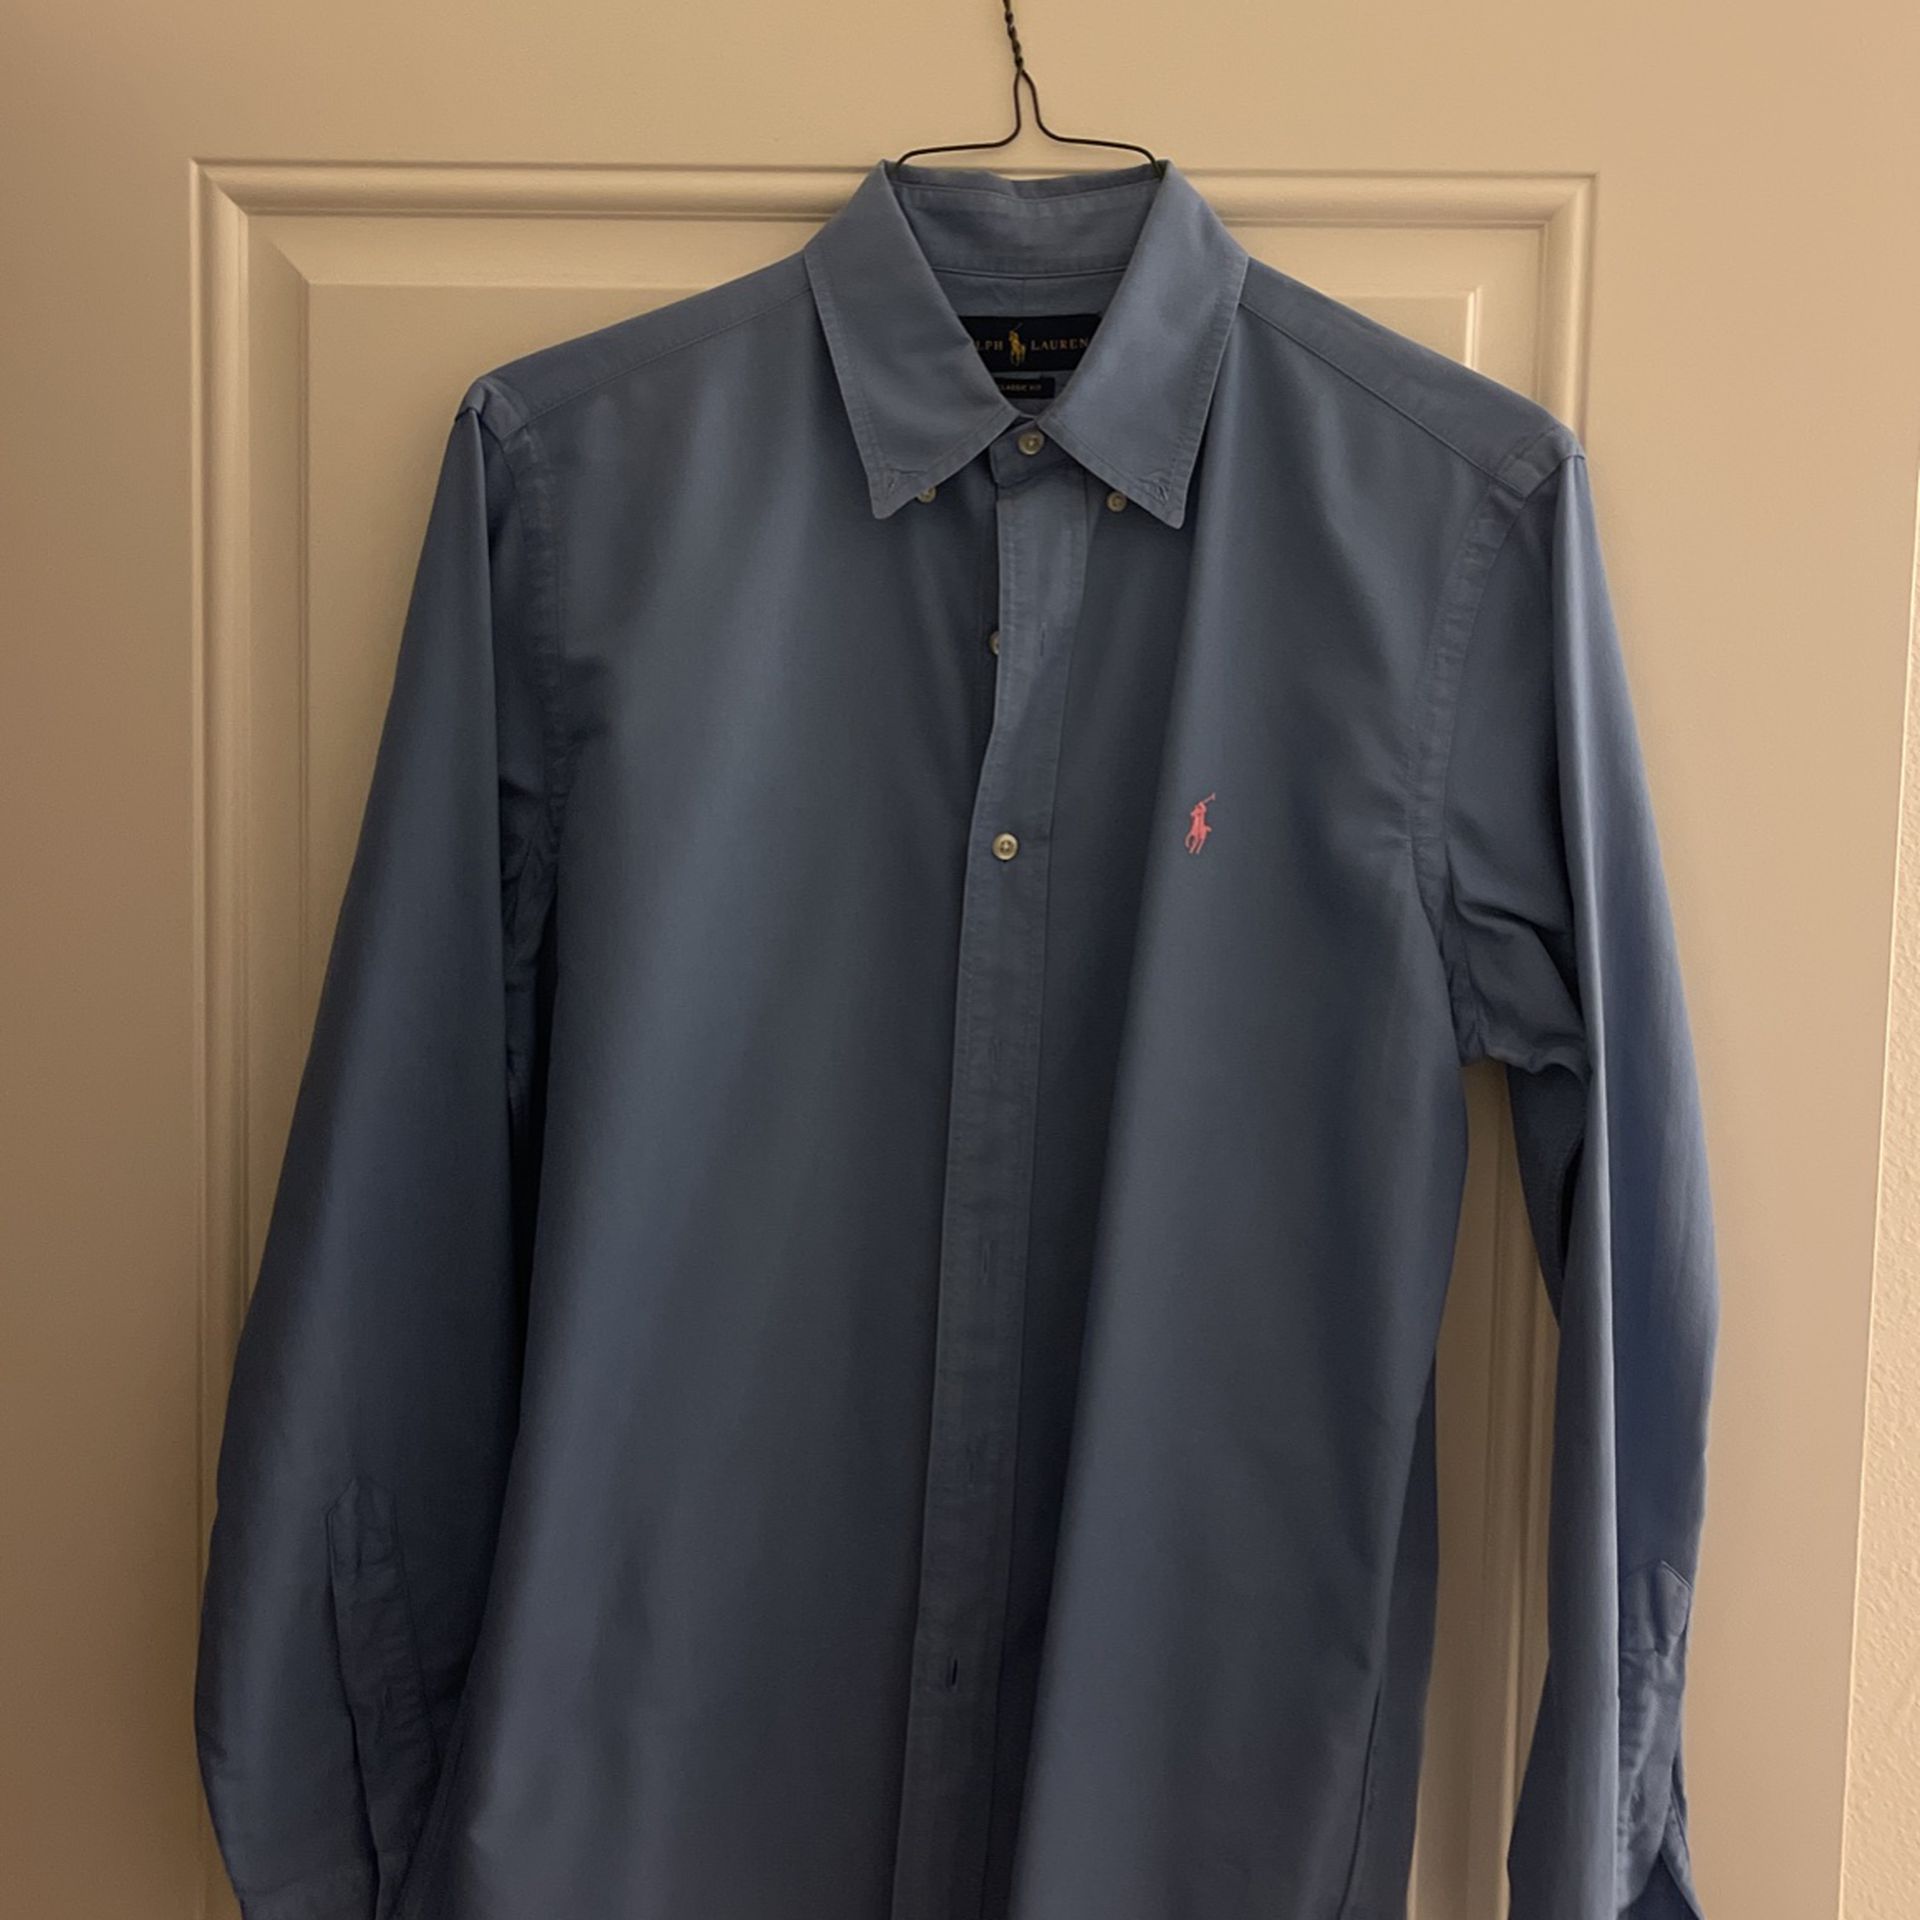 Ralph Lauren Light Blue Medium Shirt Classic Fit